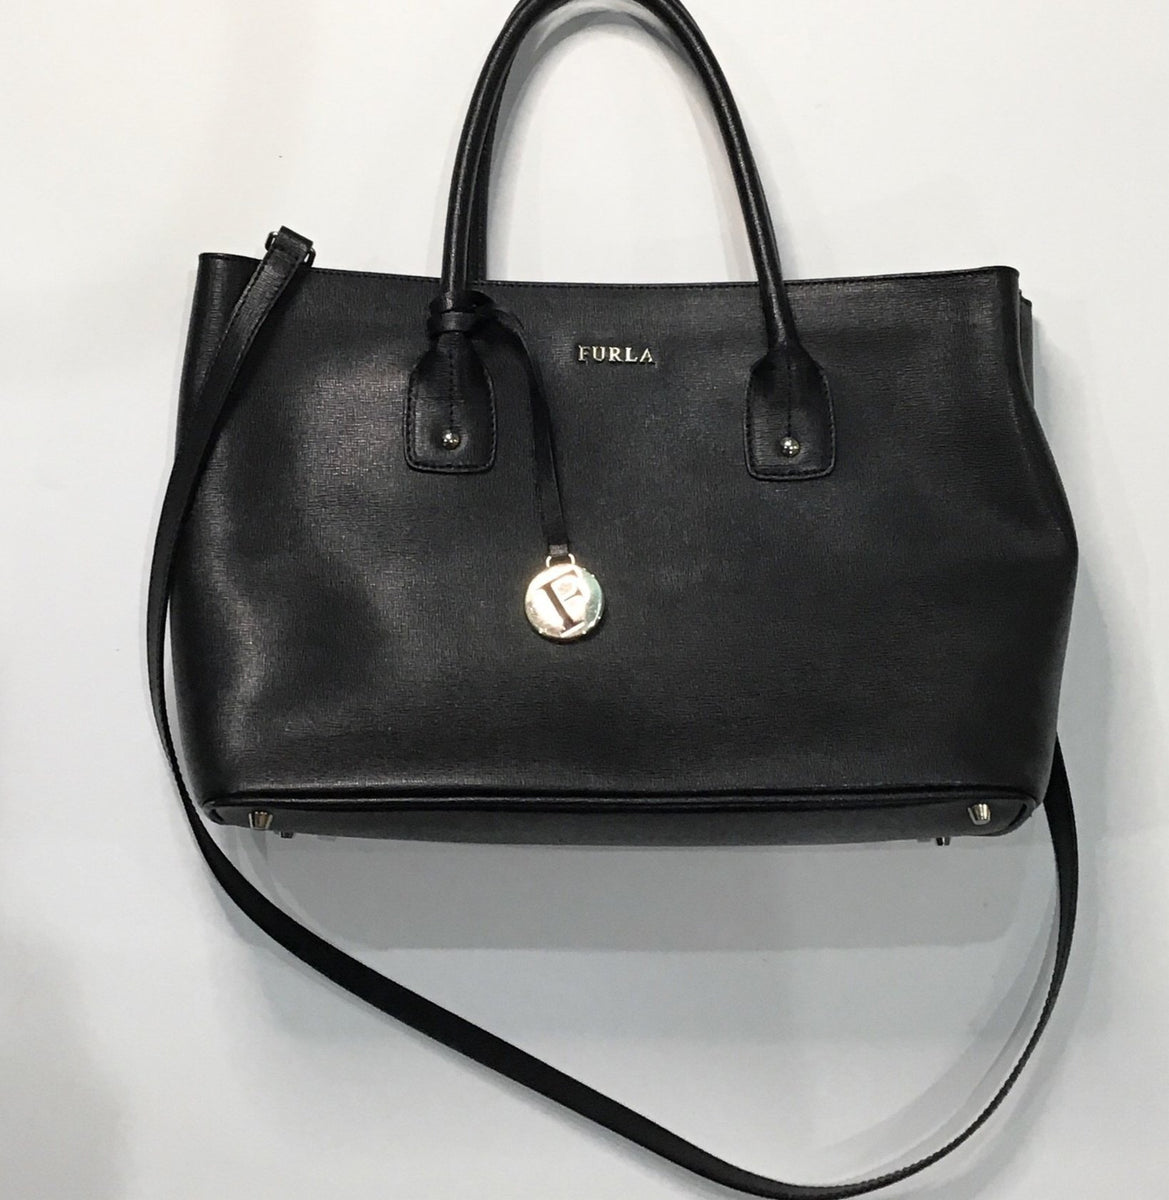 FURLA, Women's Handbag